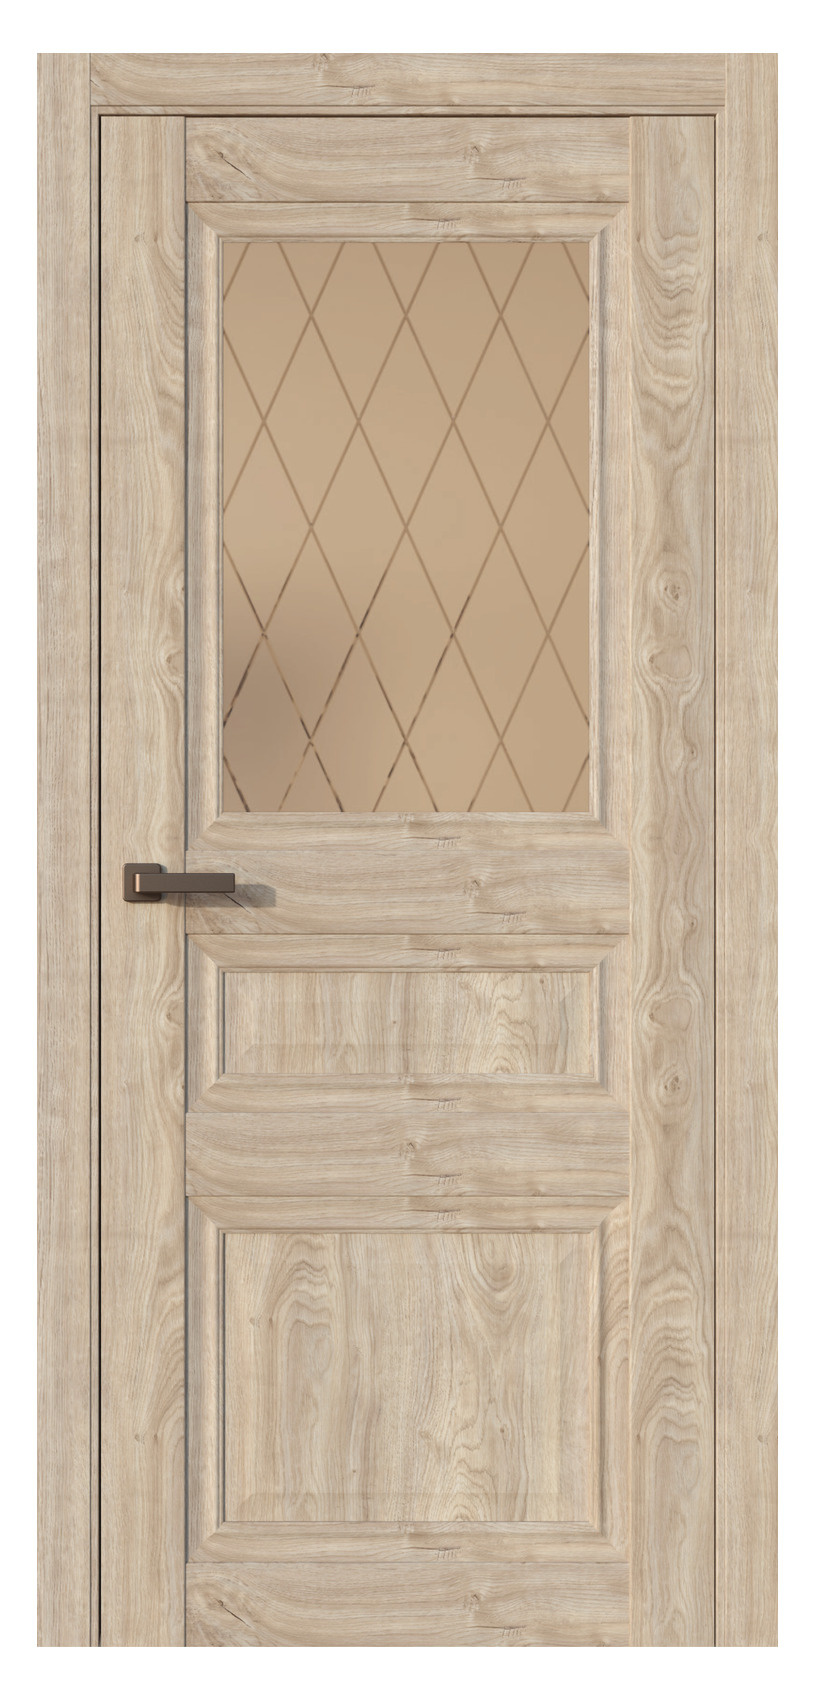 Questdoors Межкомнатная дверь QH4, арт. 17532 - фото №1